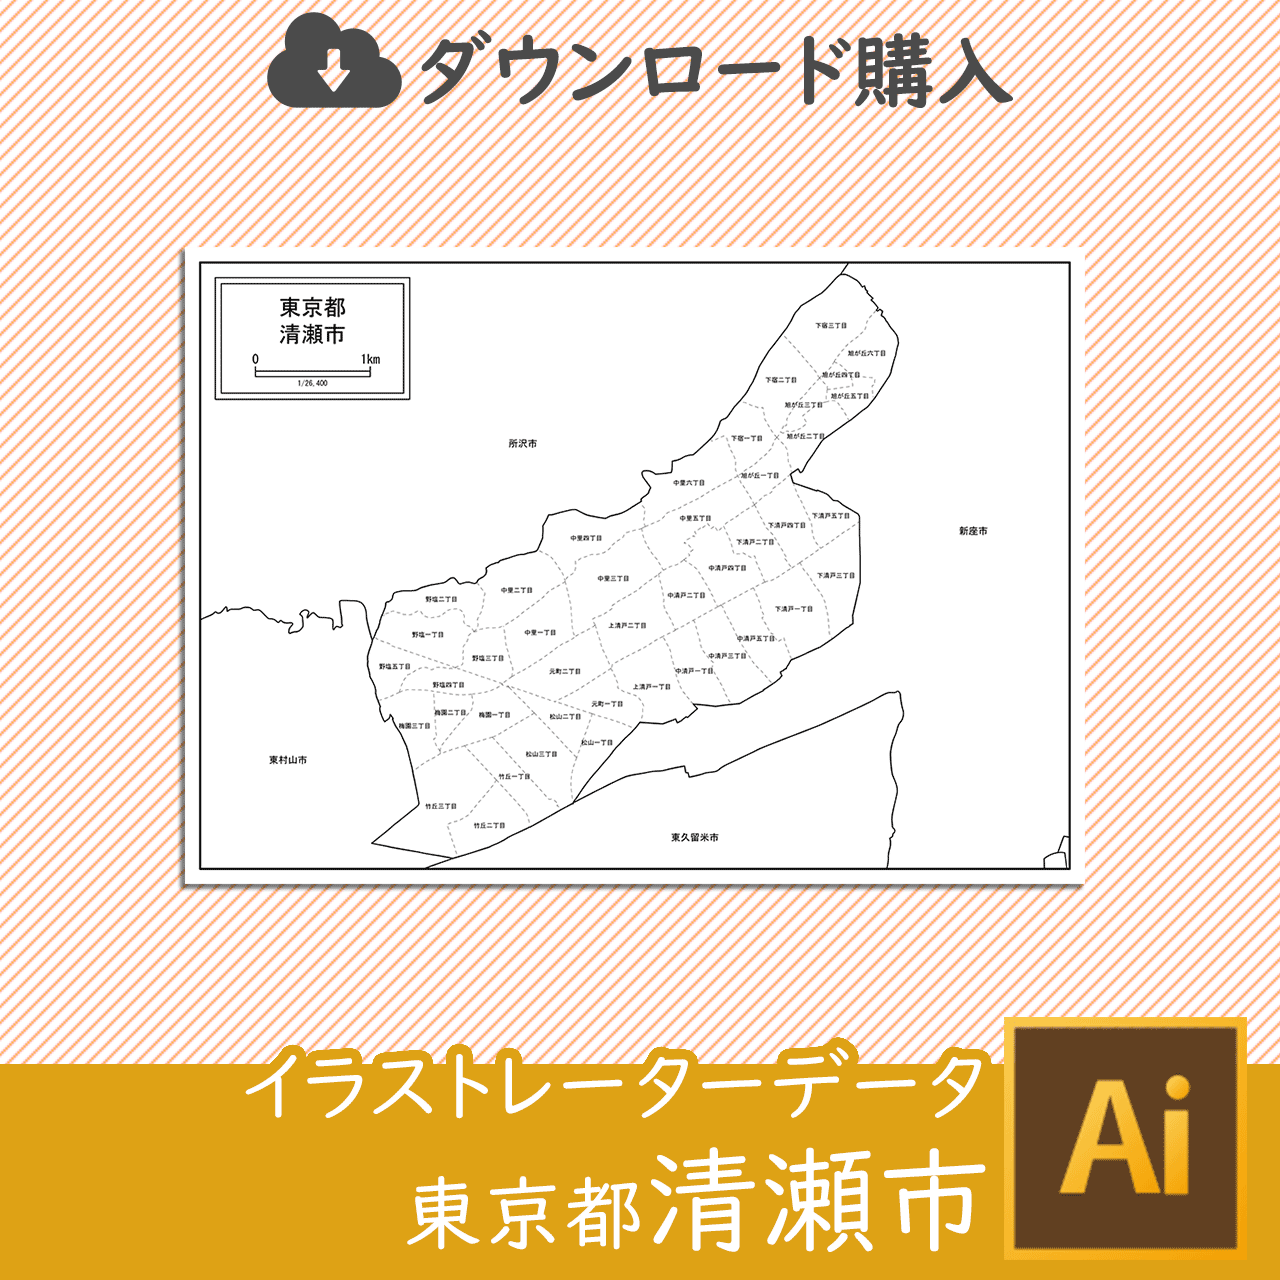 清瀬市の白地図のサムネイル画像